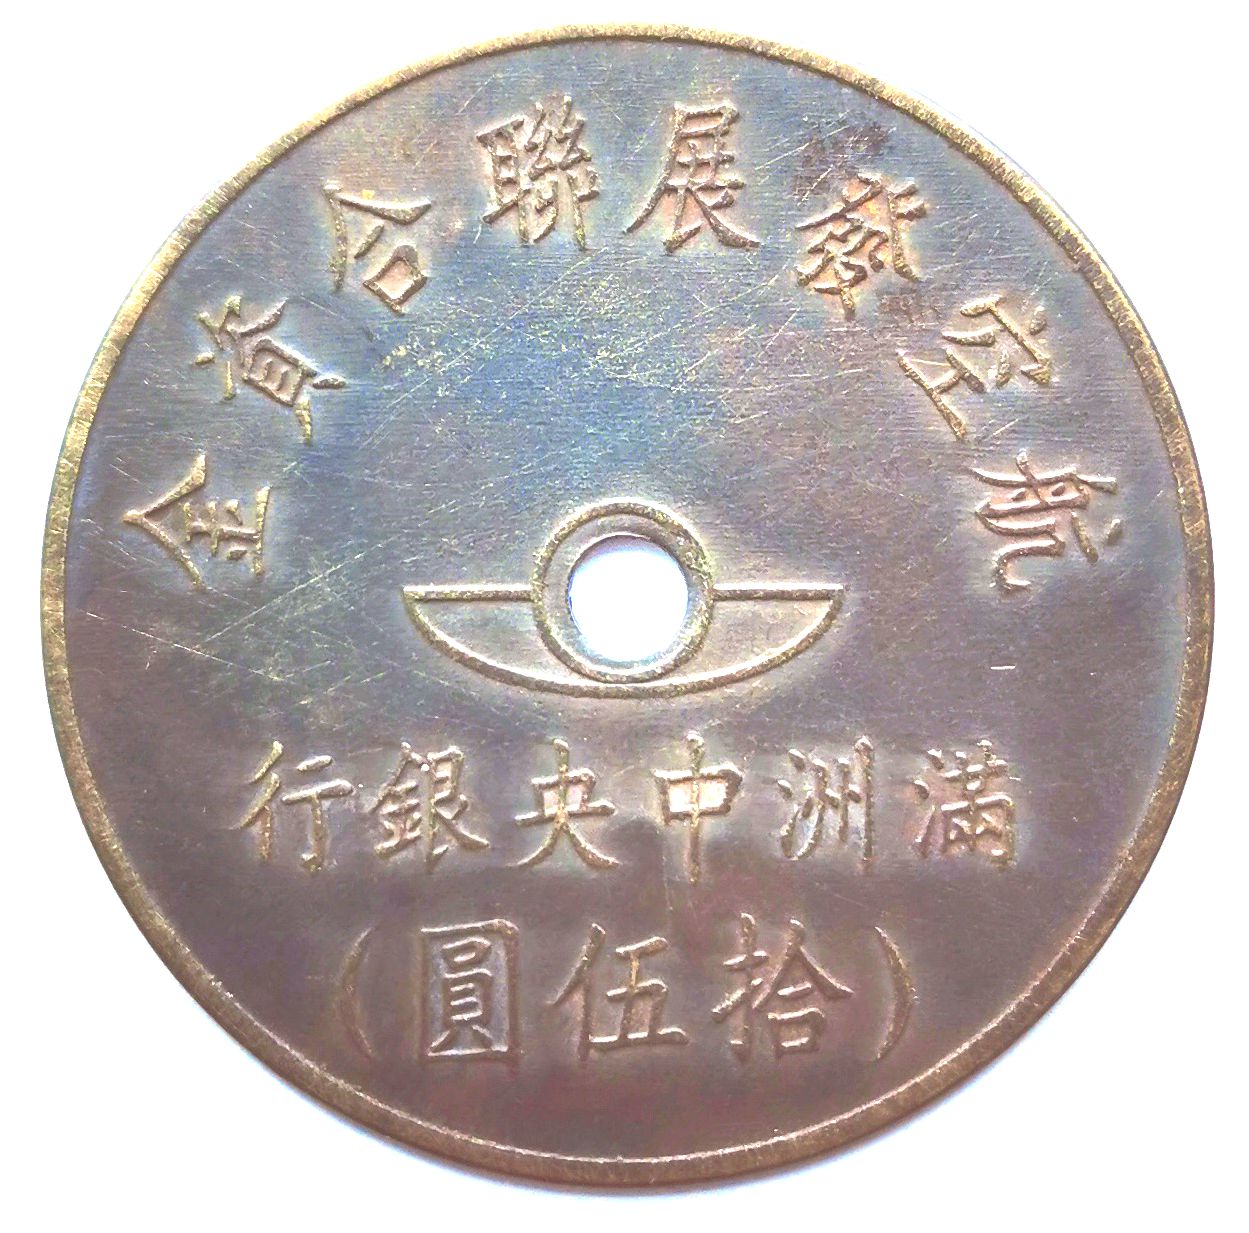 BT508, Manchukuo United Aviation Development Fund, 50 Yen Token, 1945